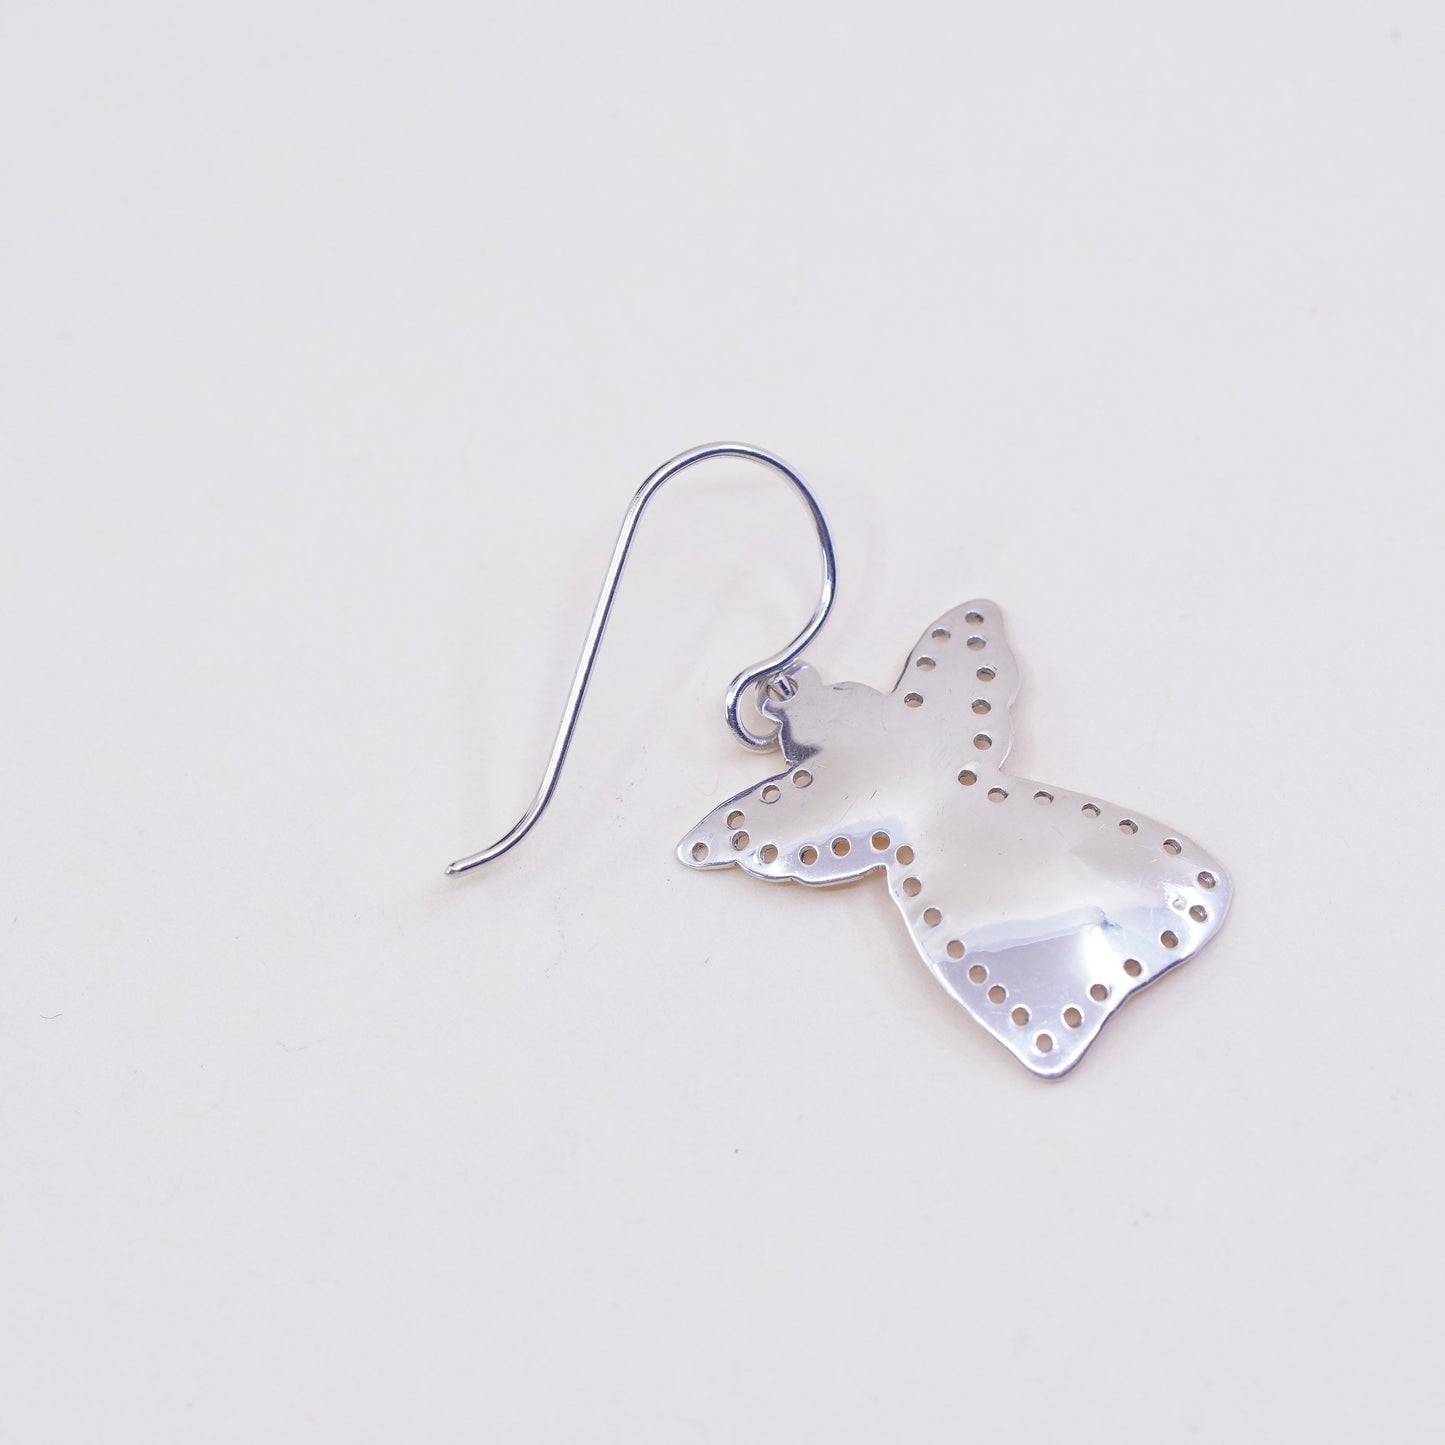 Vintage Sterling silver handmade earrings, 925 angel tag dangles